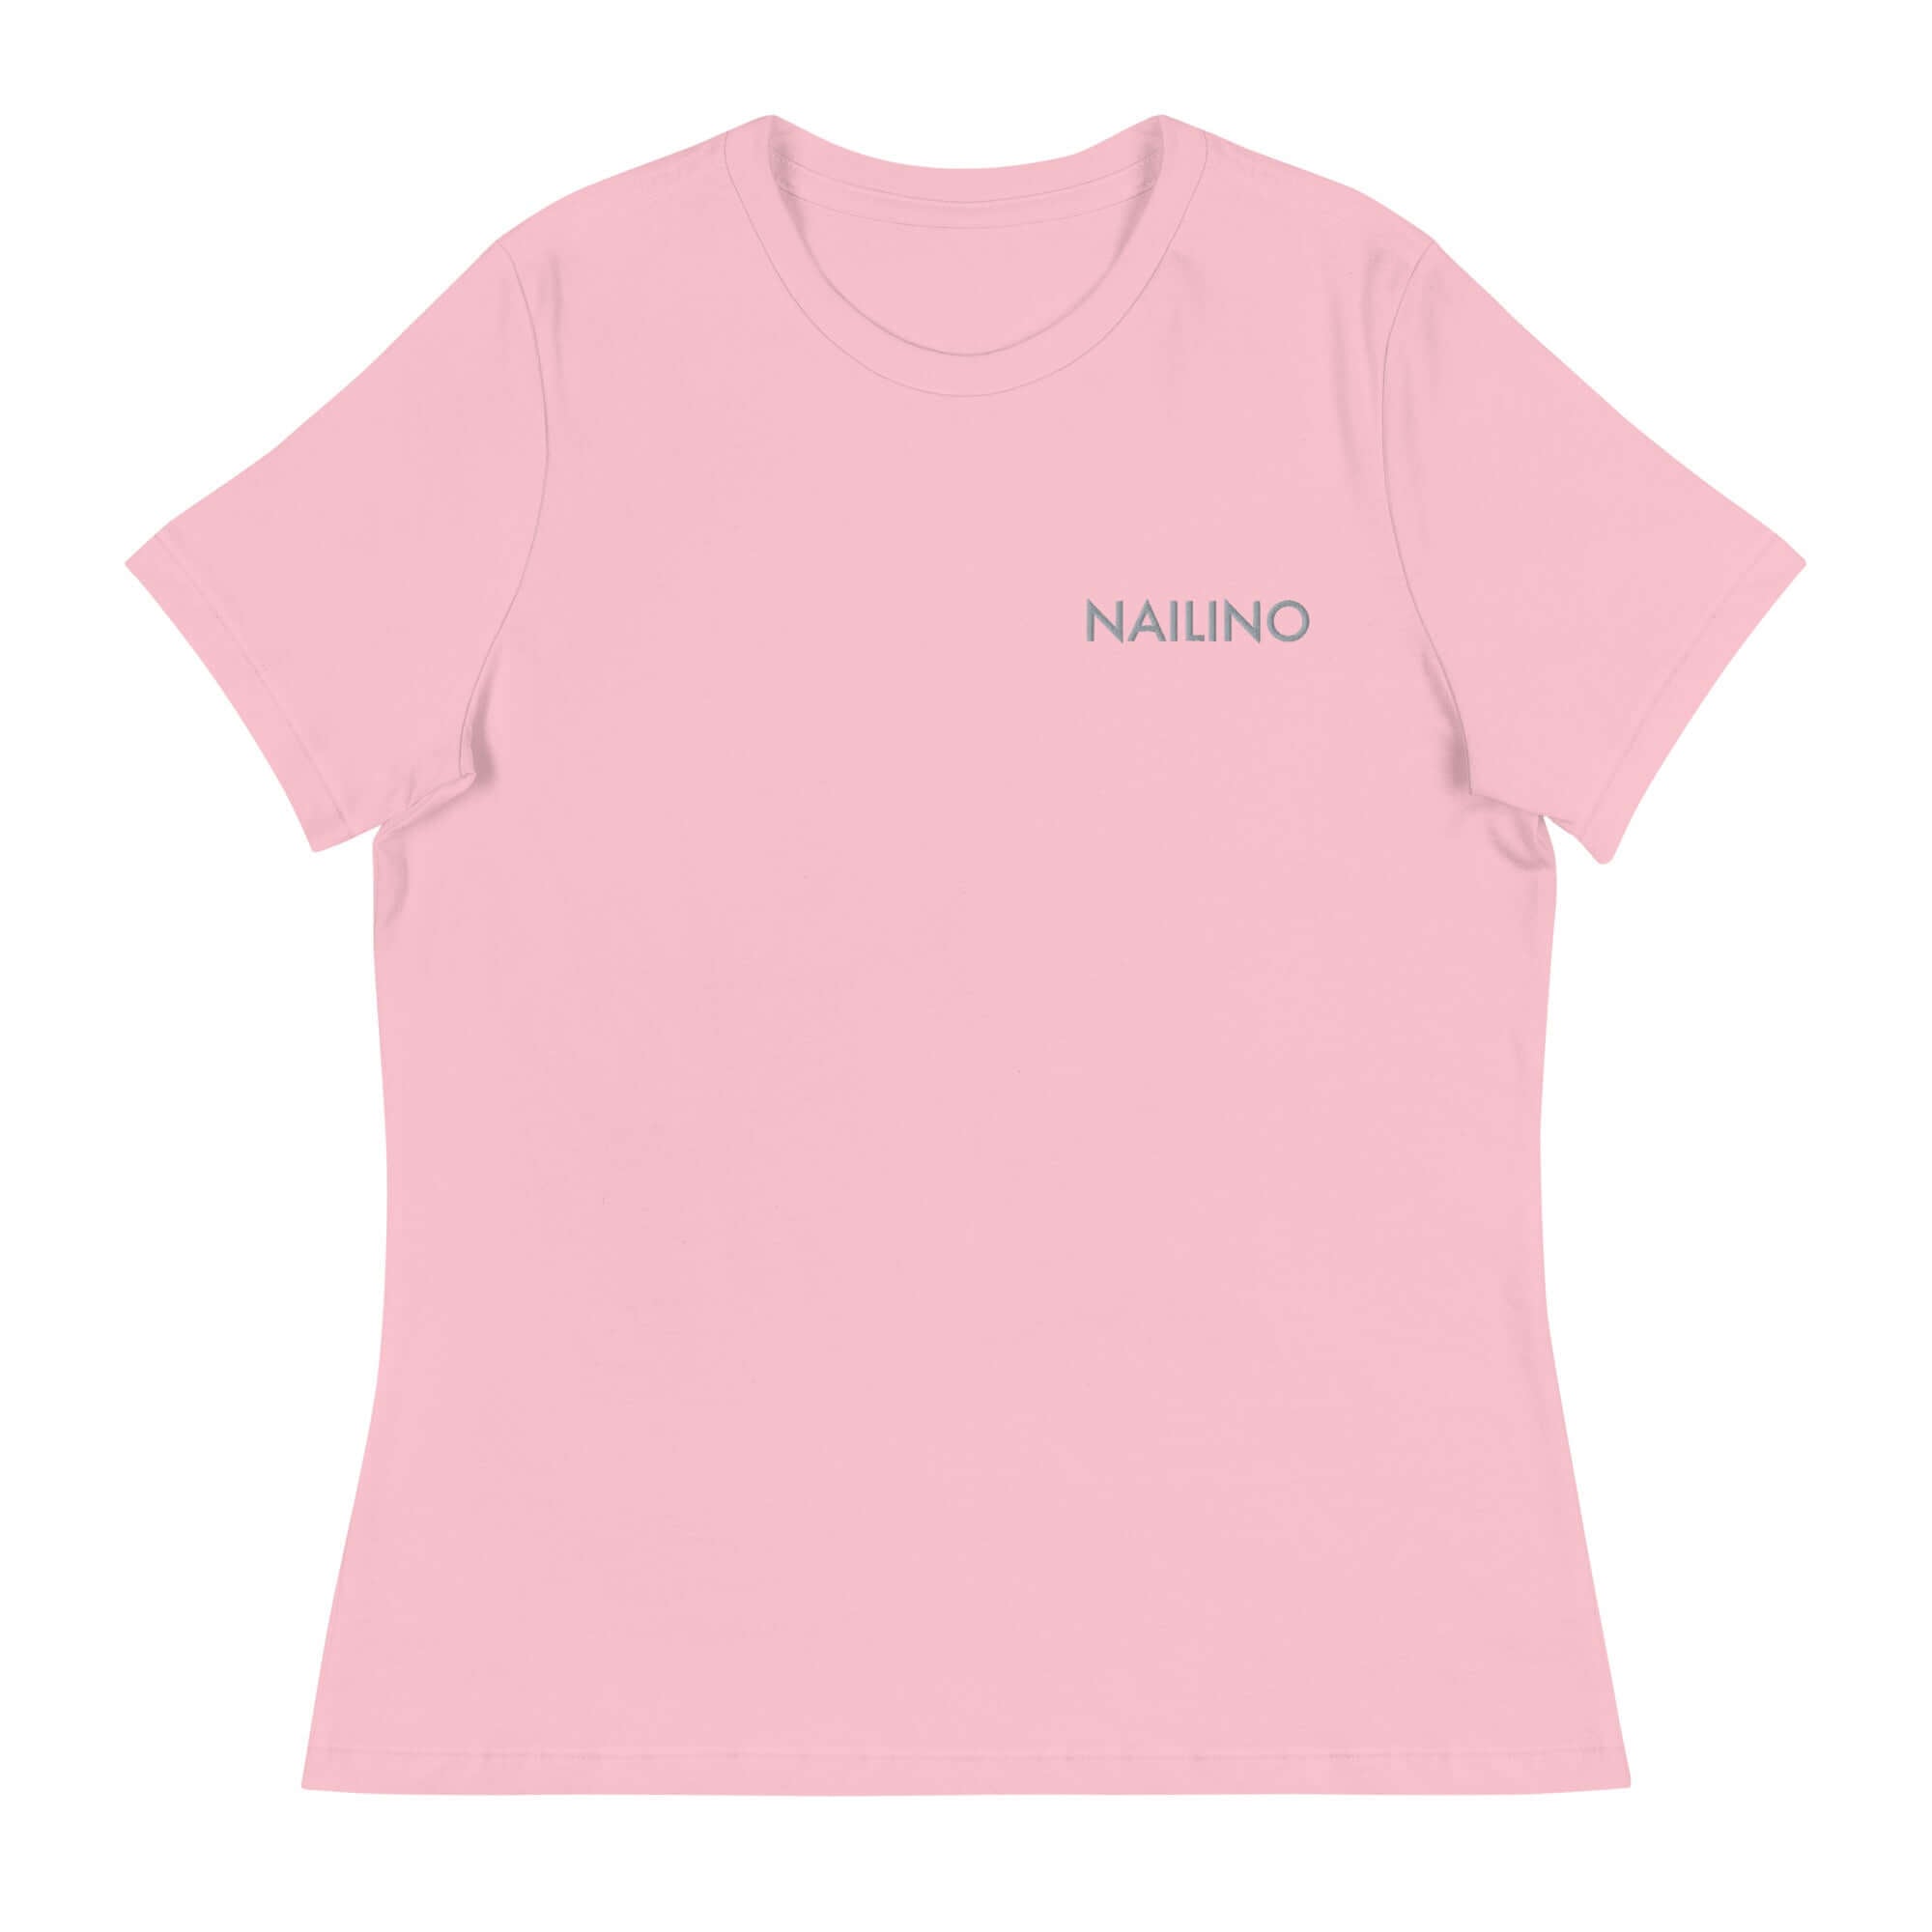 NAILINO Relaxed T-Shirt - Pink / S